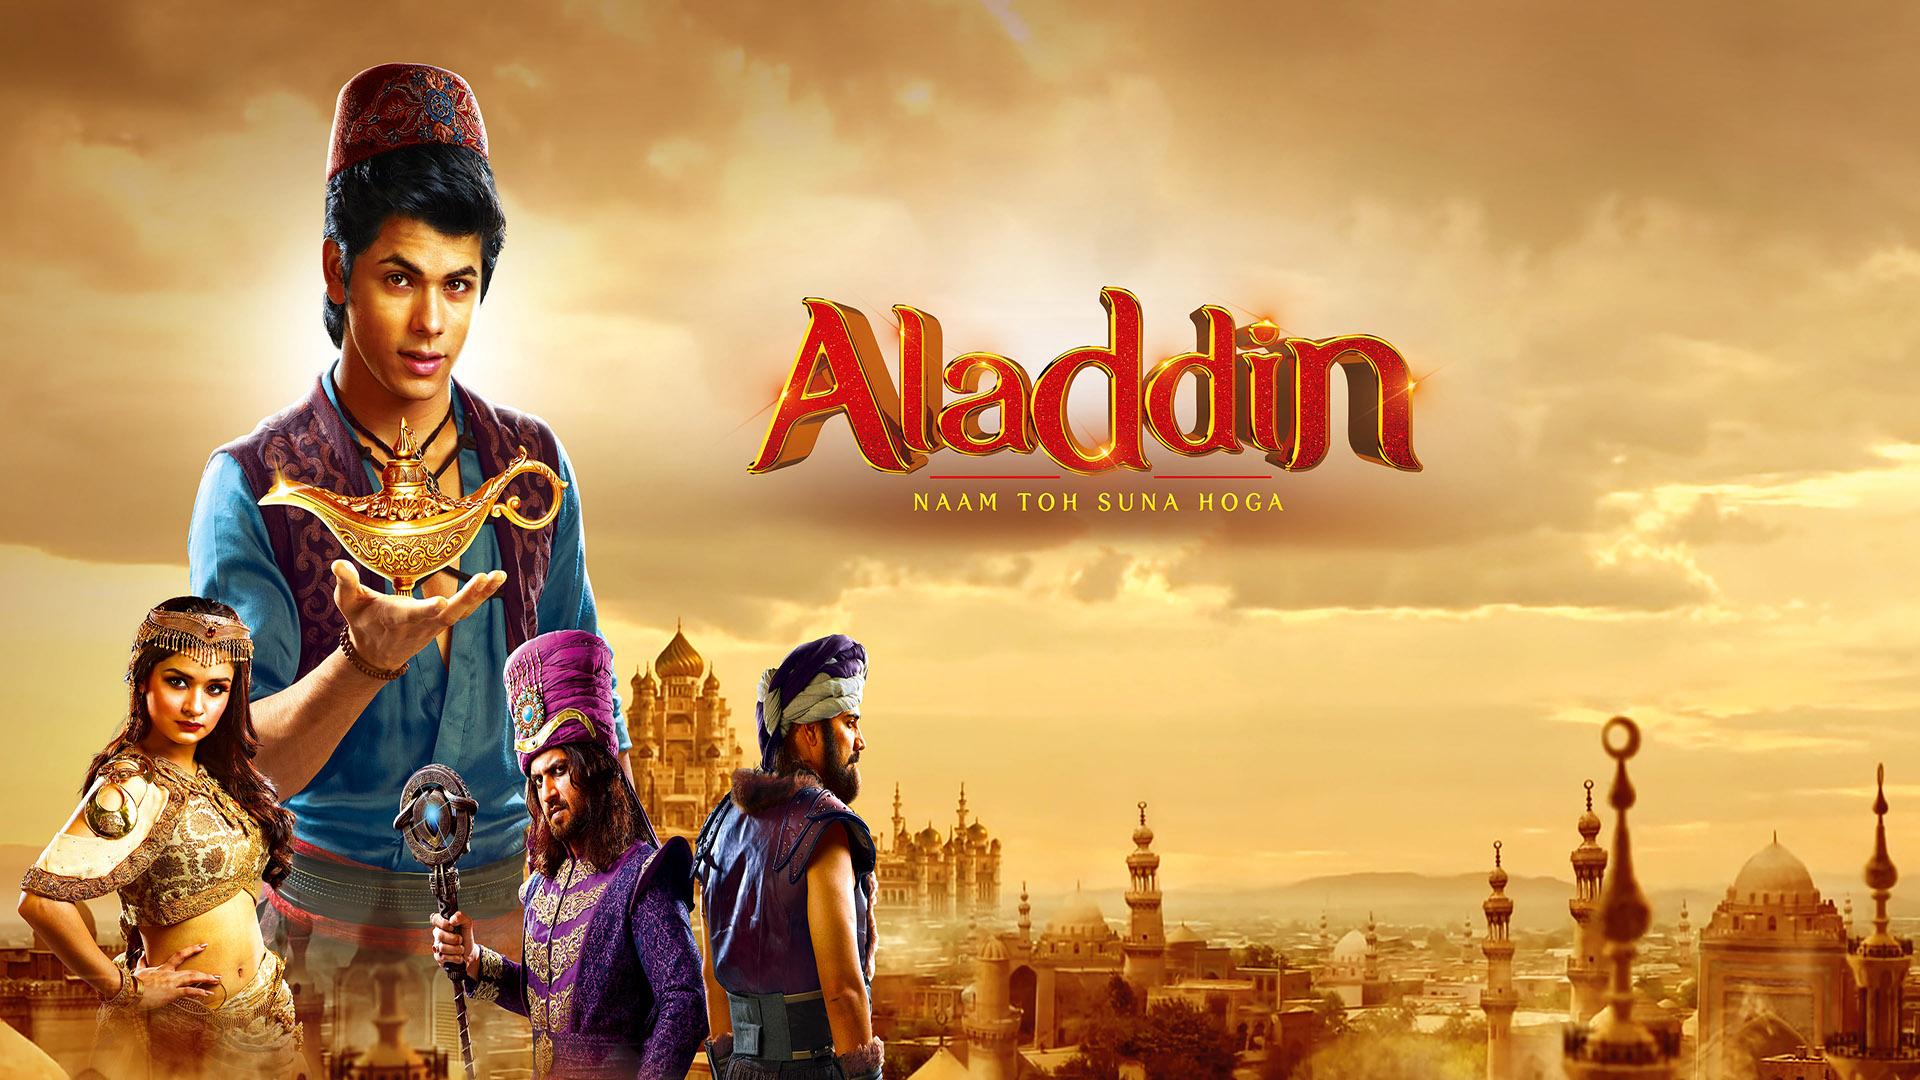 Aladdin screenshot 1.